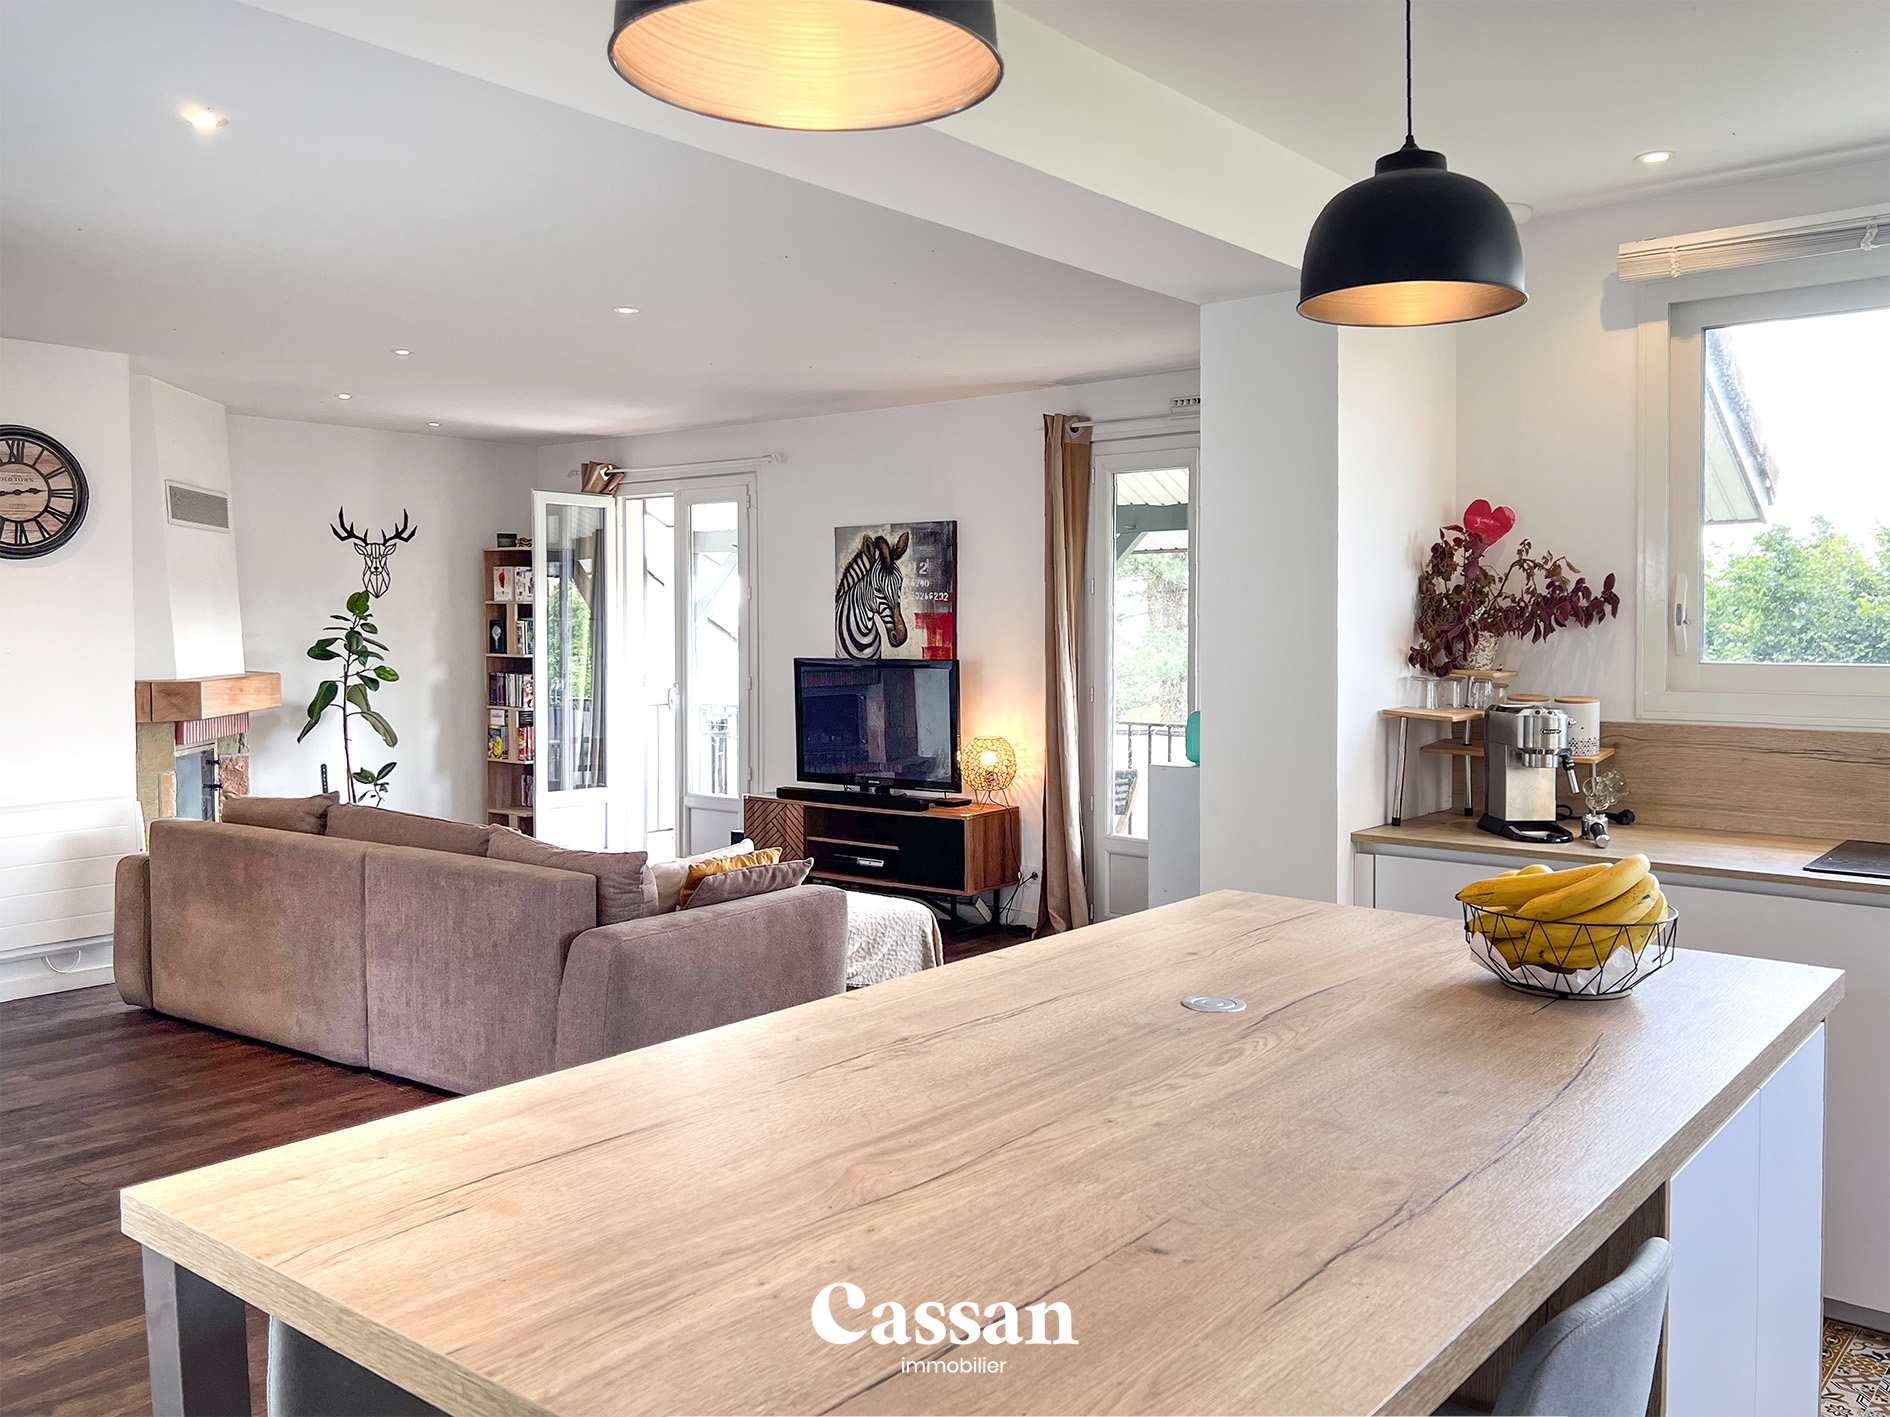 Salon cuisine maison à vendre Aurillac Cassan immobilier